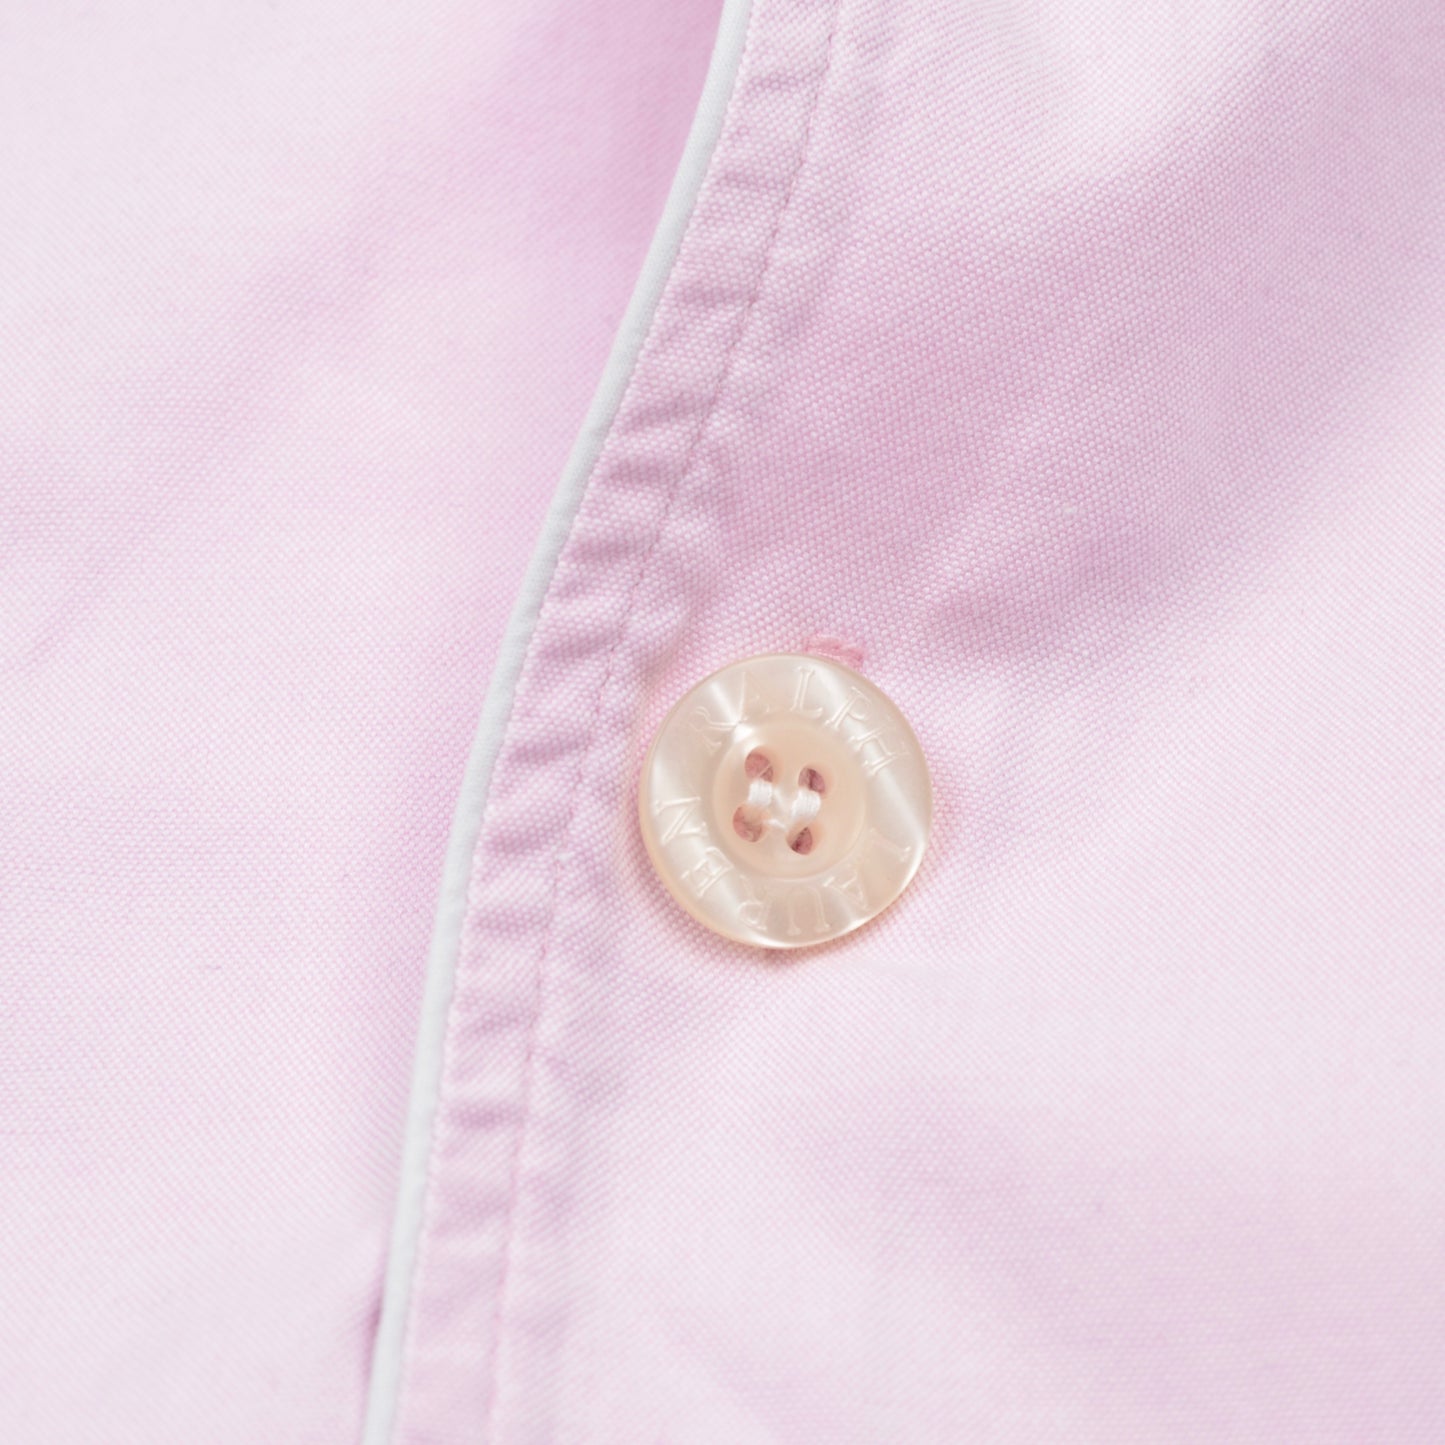 Polo Ralph Lauren Baumwollpyjama Größe M - Pink